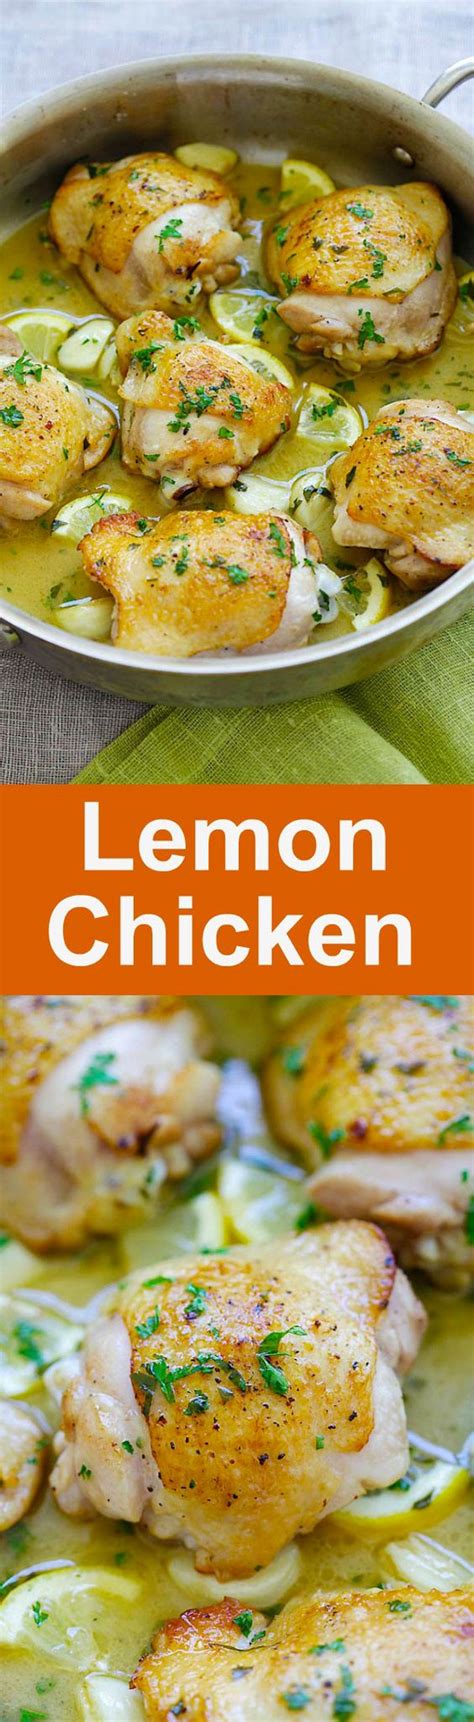 Skillet Lemon Chicken Easy Delicious Recipes